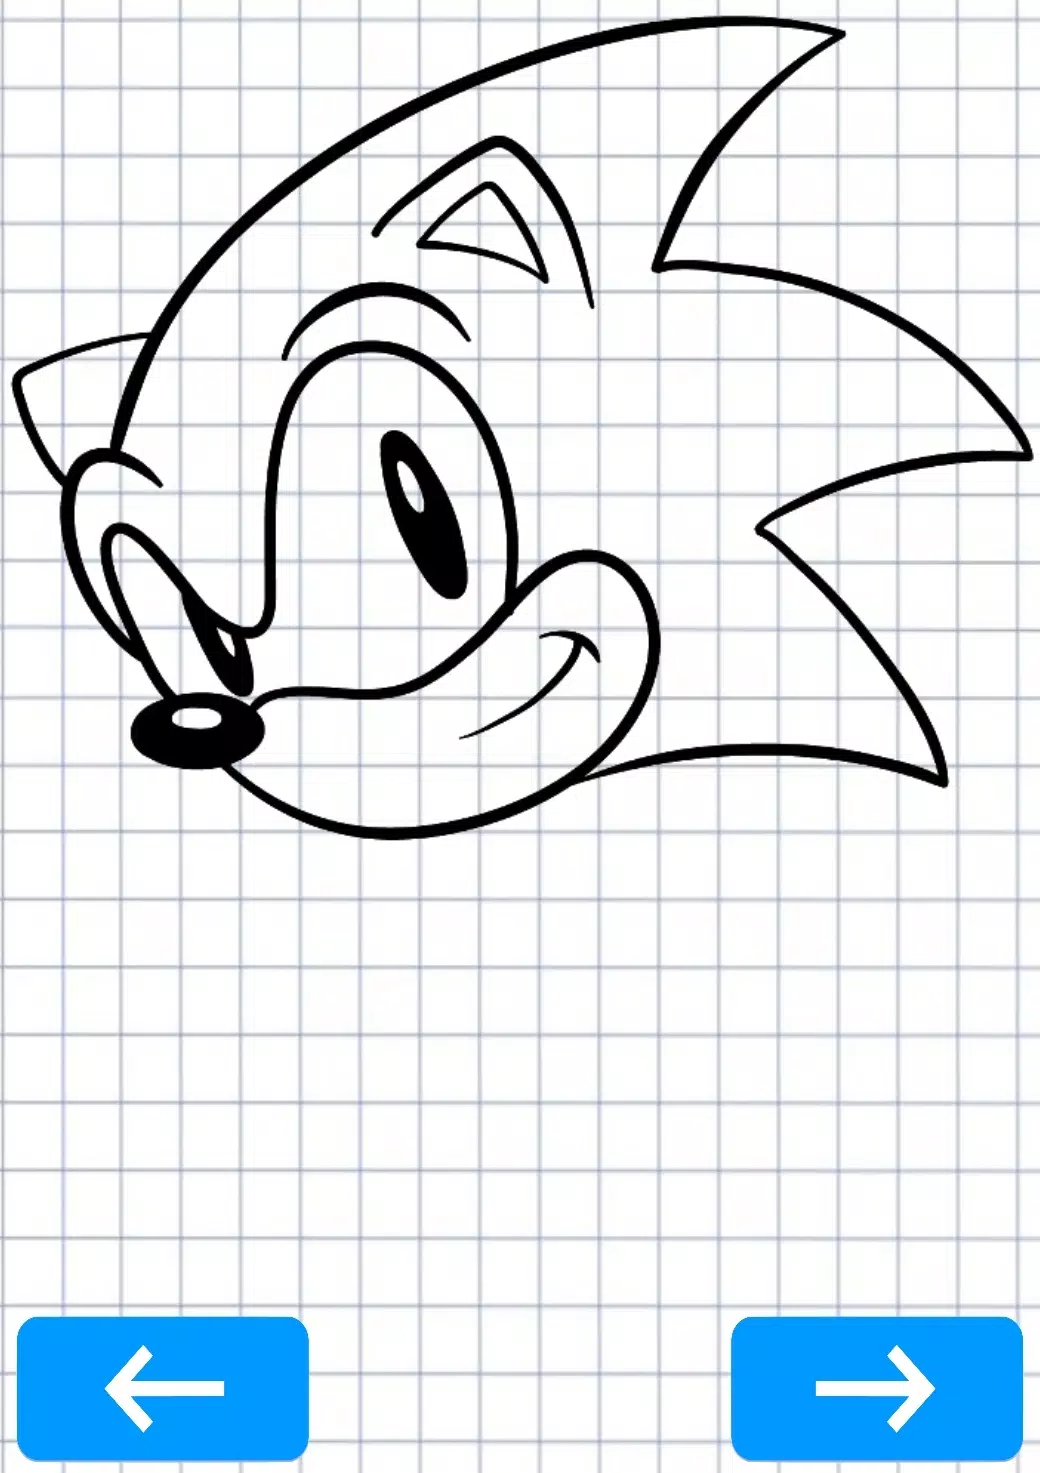 Descarga de APK de Cómo dibujar Sonic the Hedgehog para Android